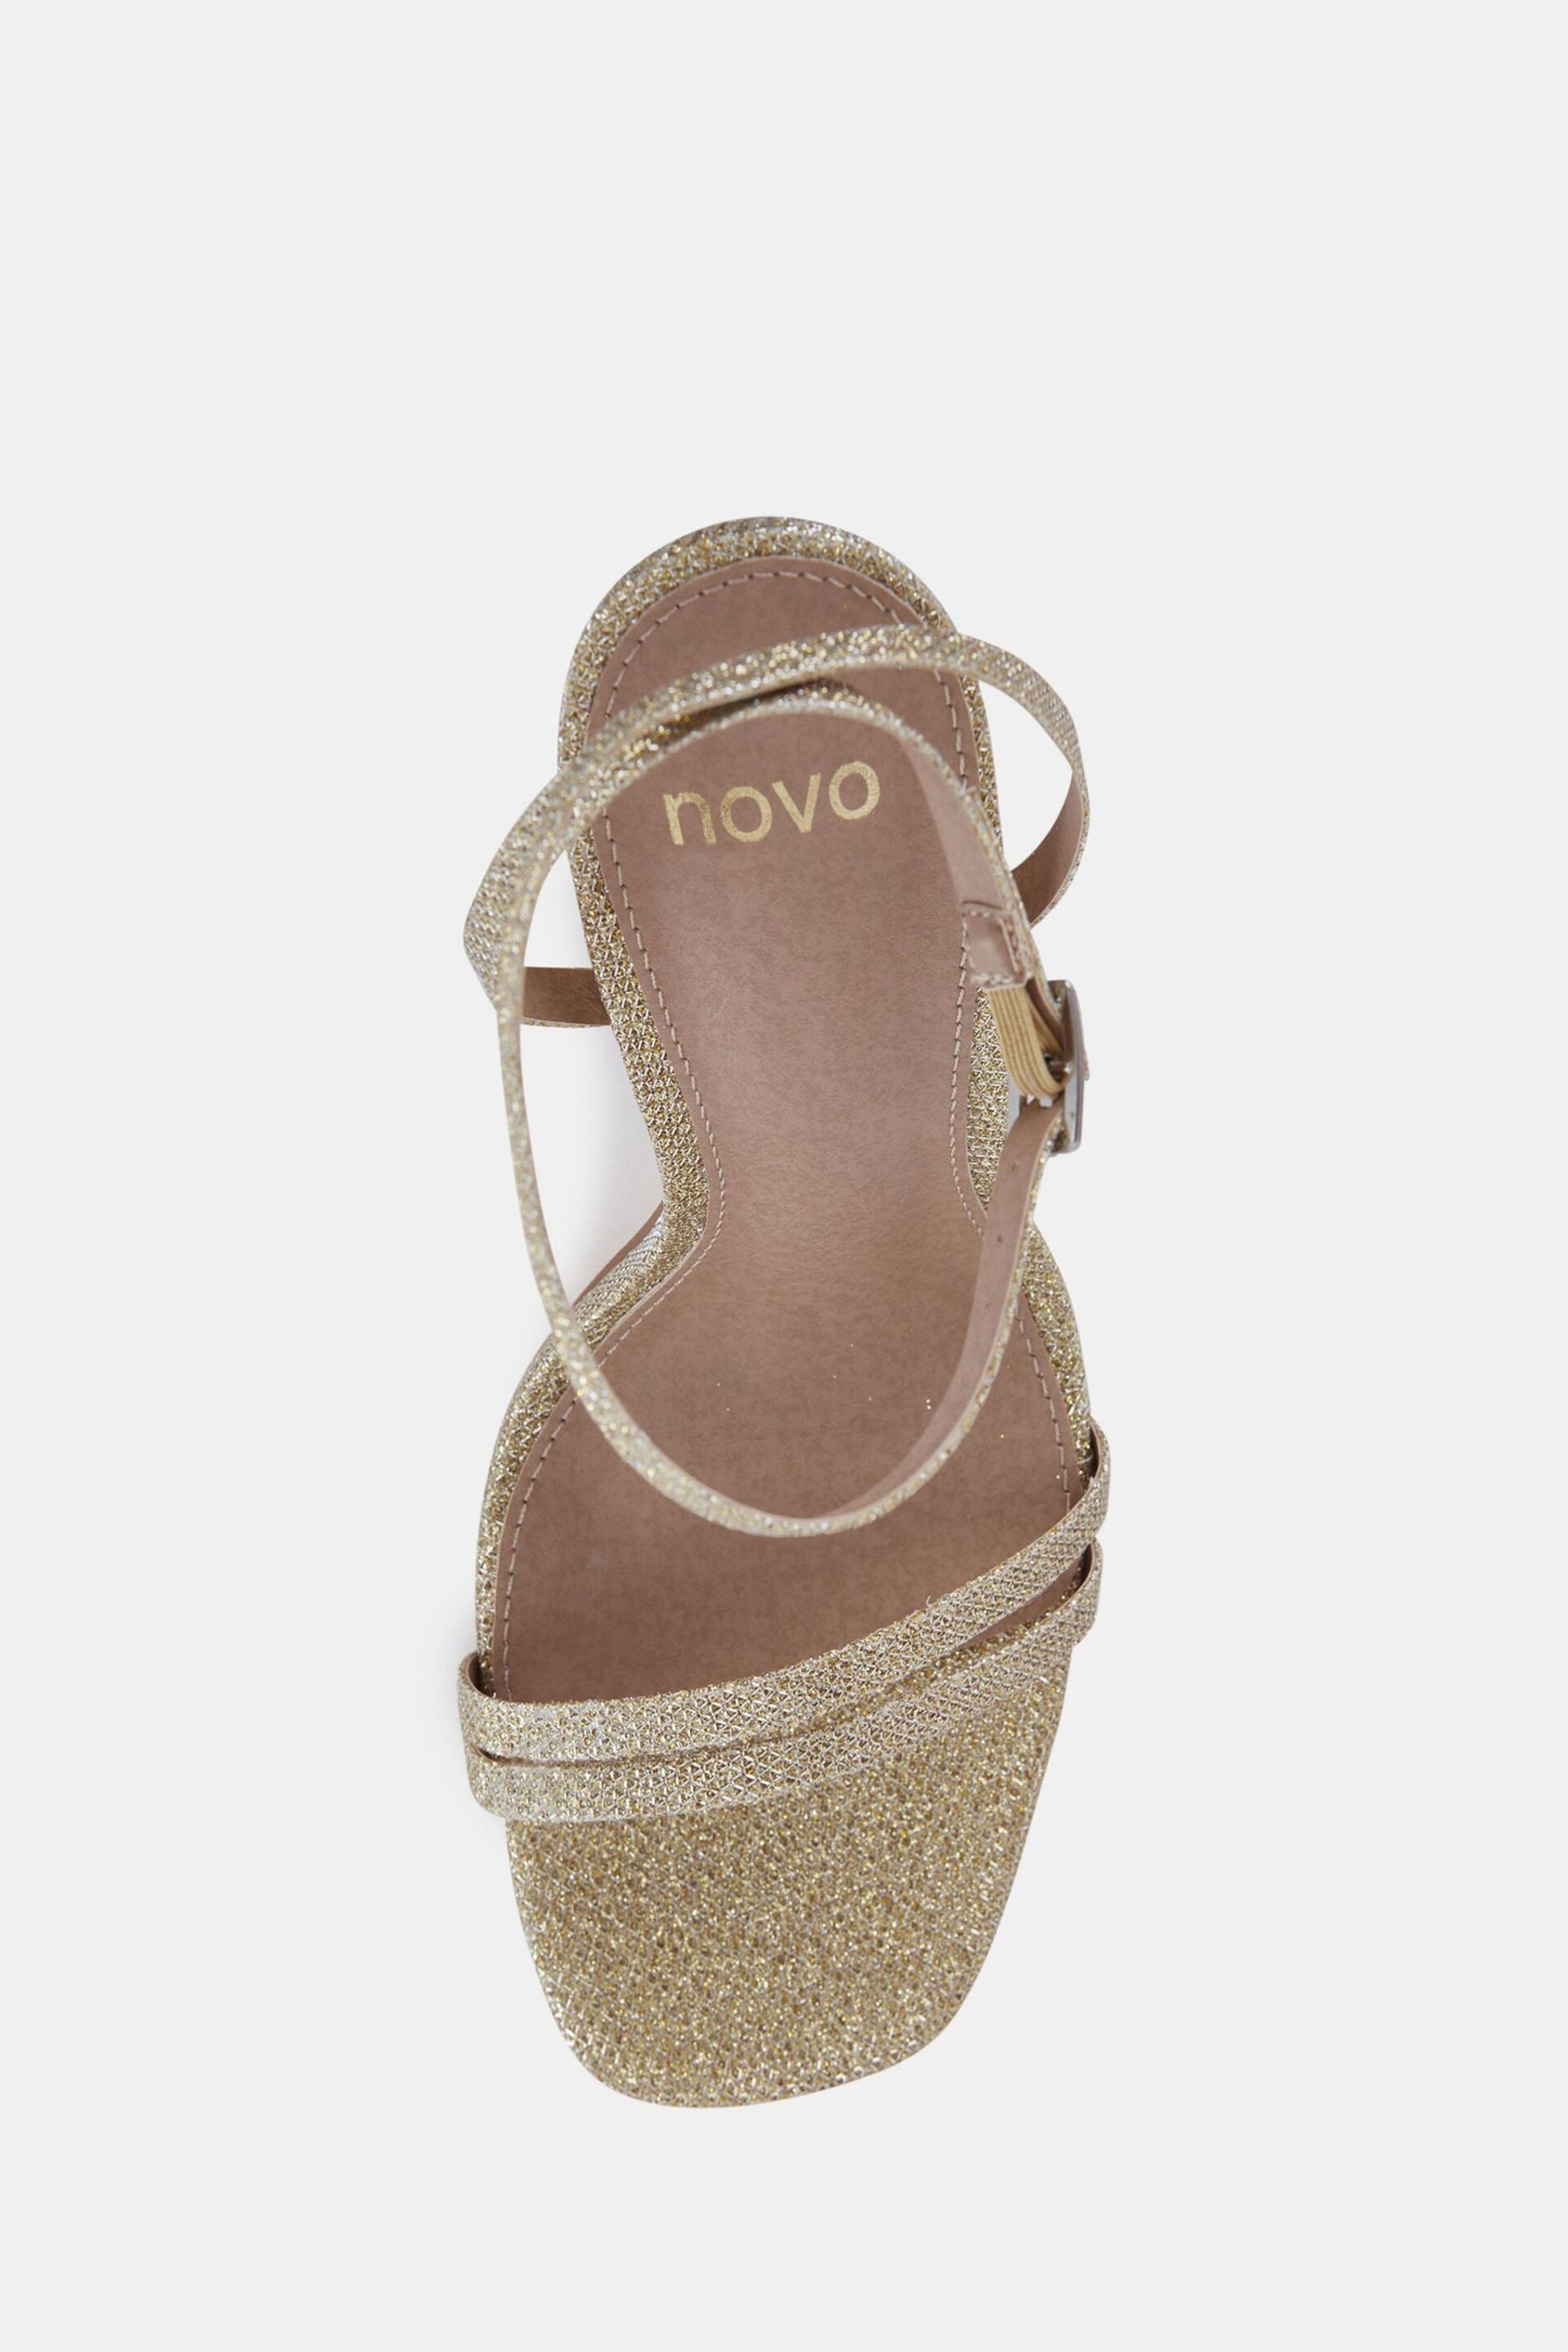 Novo Gold McKenna Strappy Heeled Sandals - Image 5 of 6